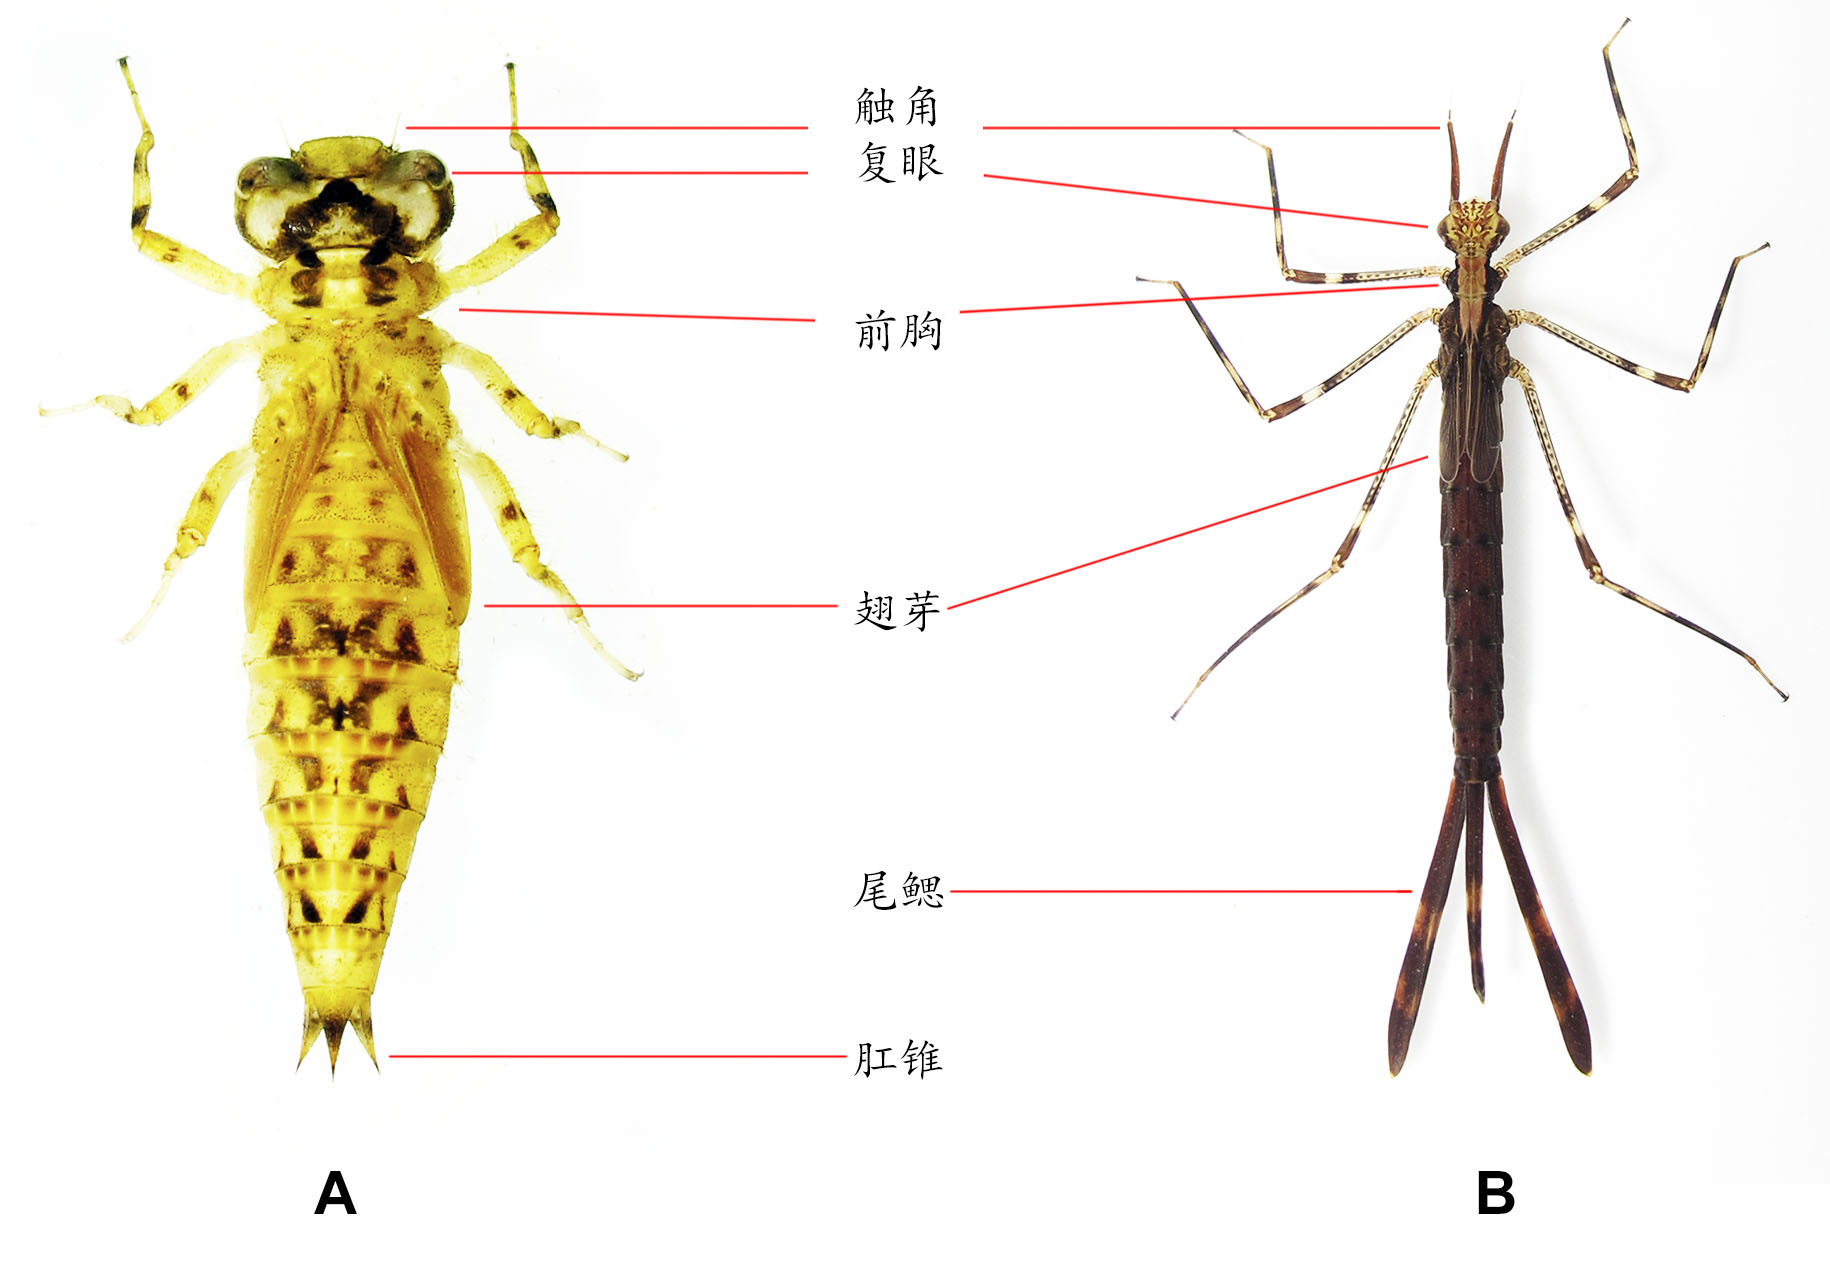 与差翅类 (下)蜻蜓成虫分类鉴定常用到的特征包括翅脉,雄性的次生生殖